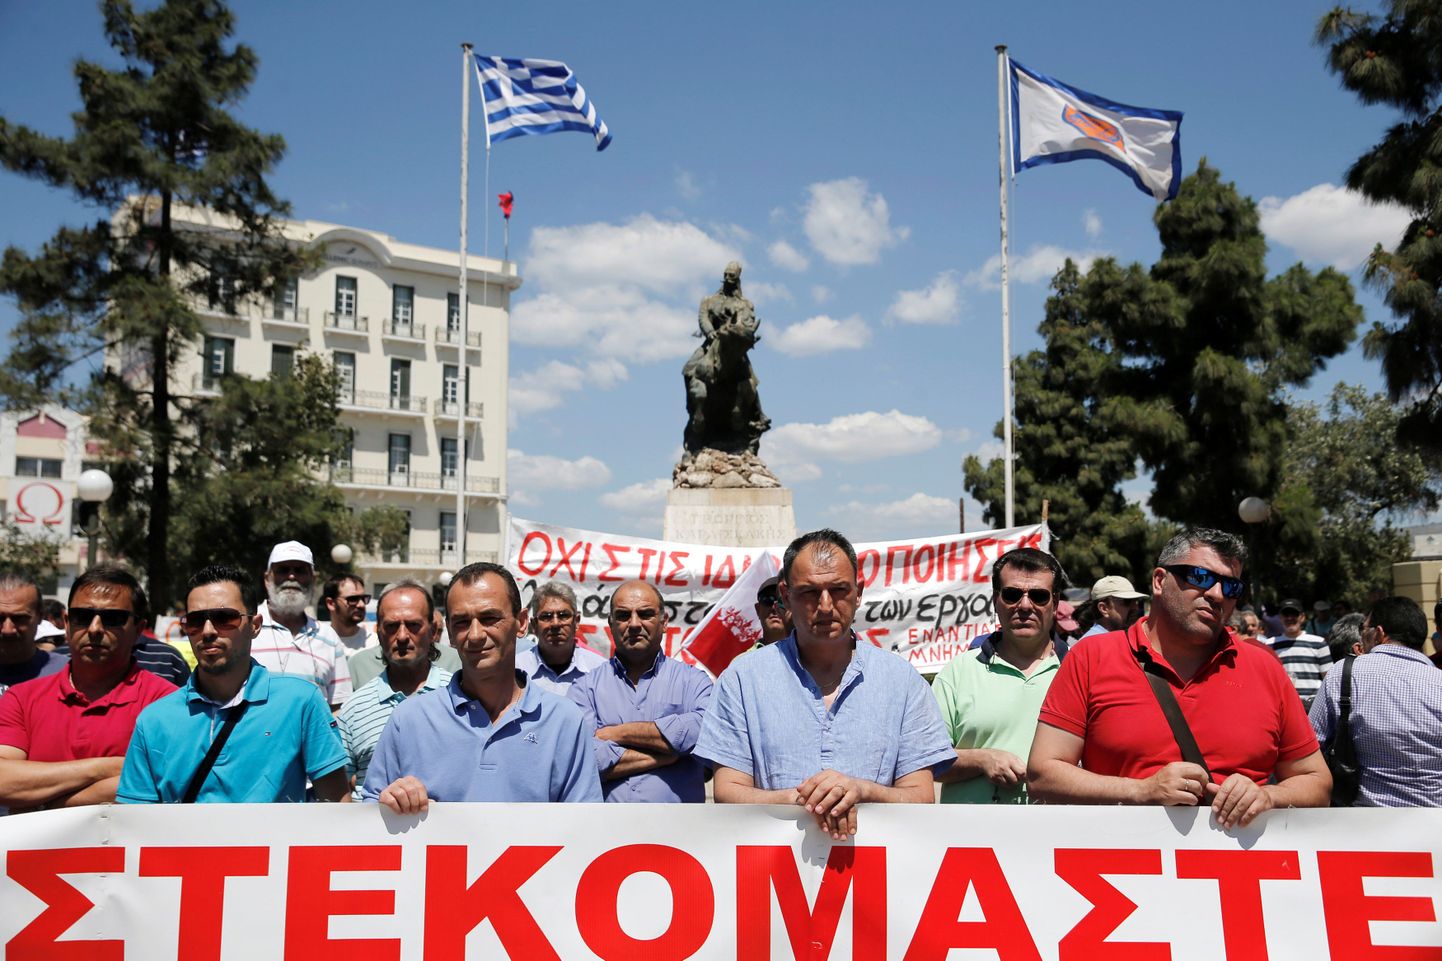 Kreeka sadamatöölised protesteerivad Pireuse sadamas valitsuse otsuse üle müüa kaks riigi suurimat sadamat.